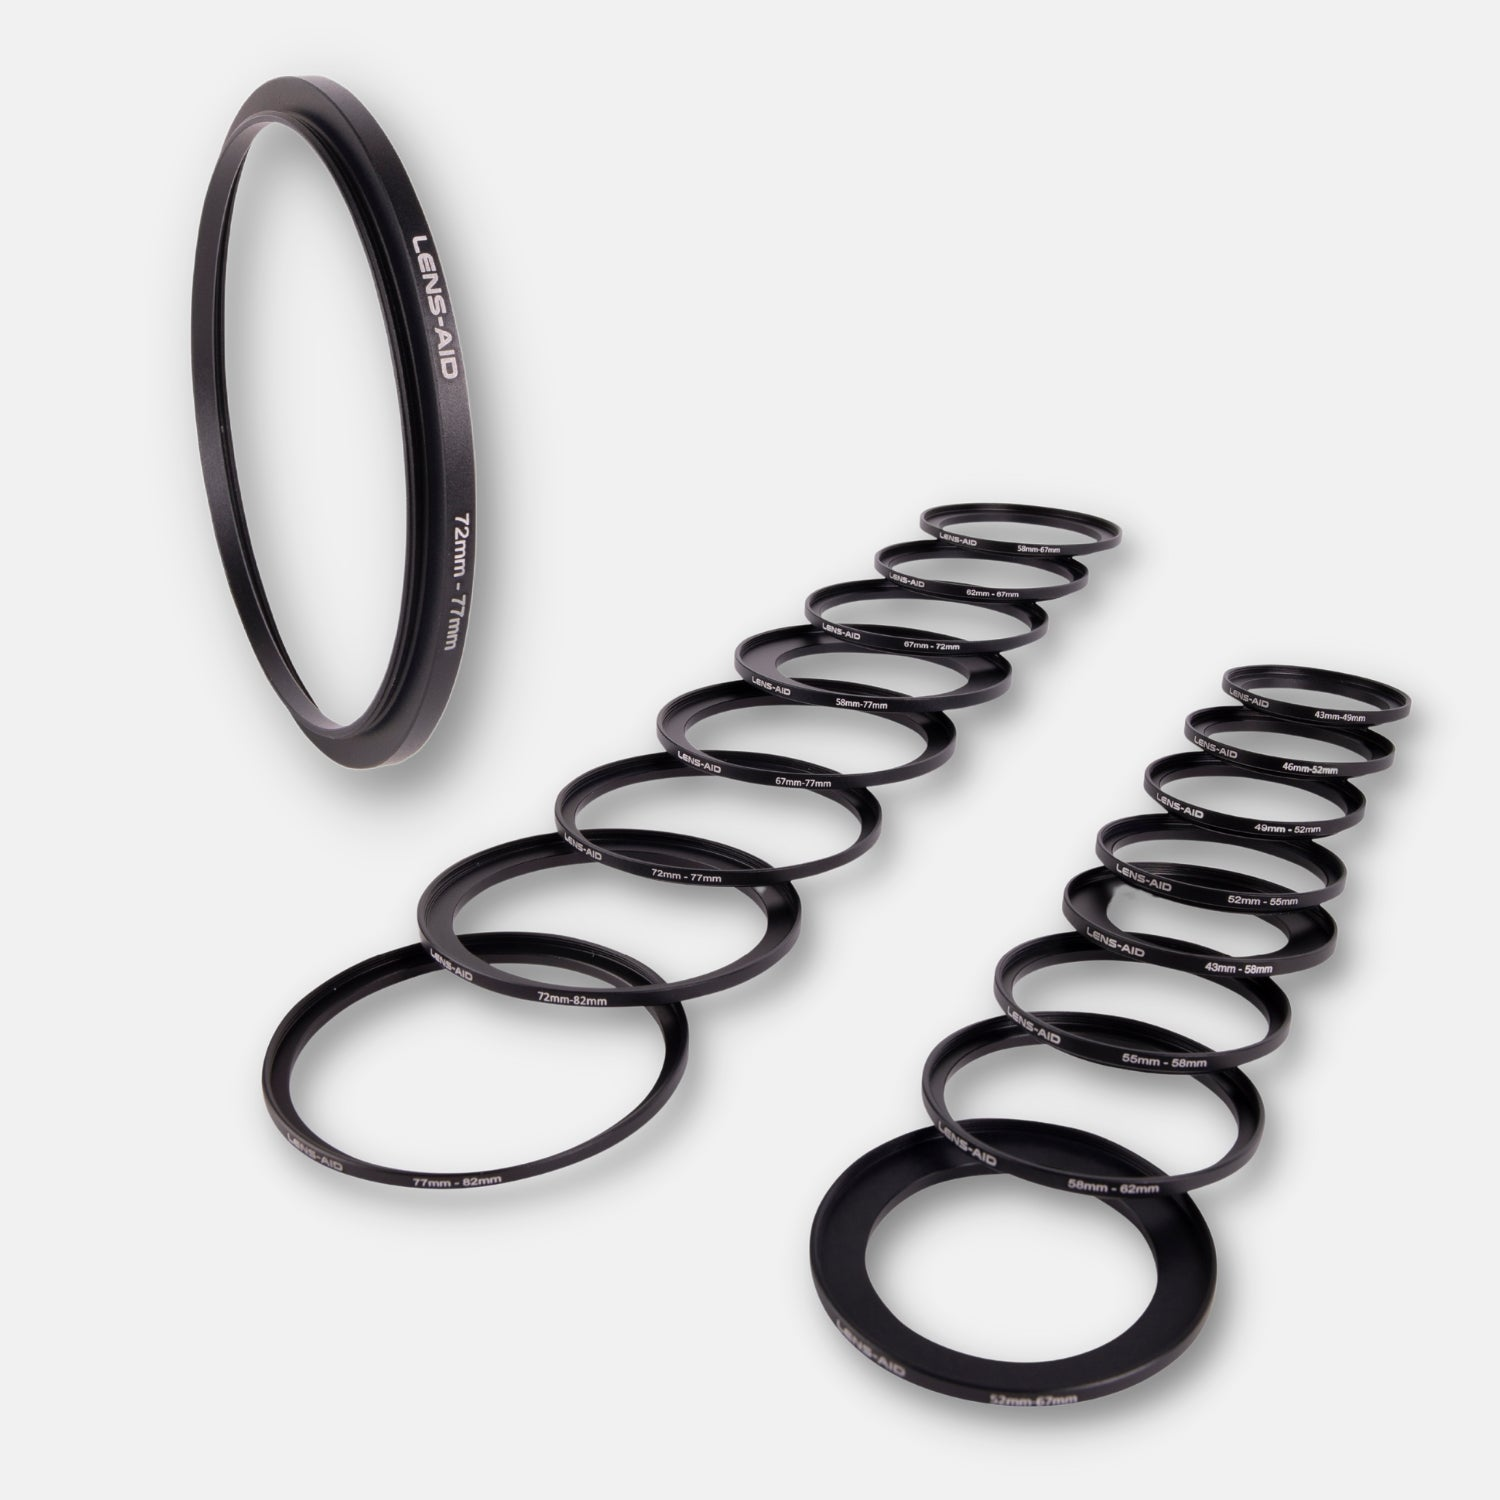 Ringe, 43-49mm, LENS-AID Step-Up Objektive für passend Filtergewinde Schwarz, mit